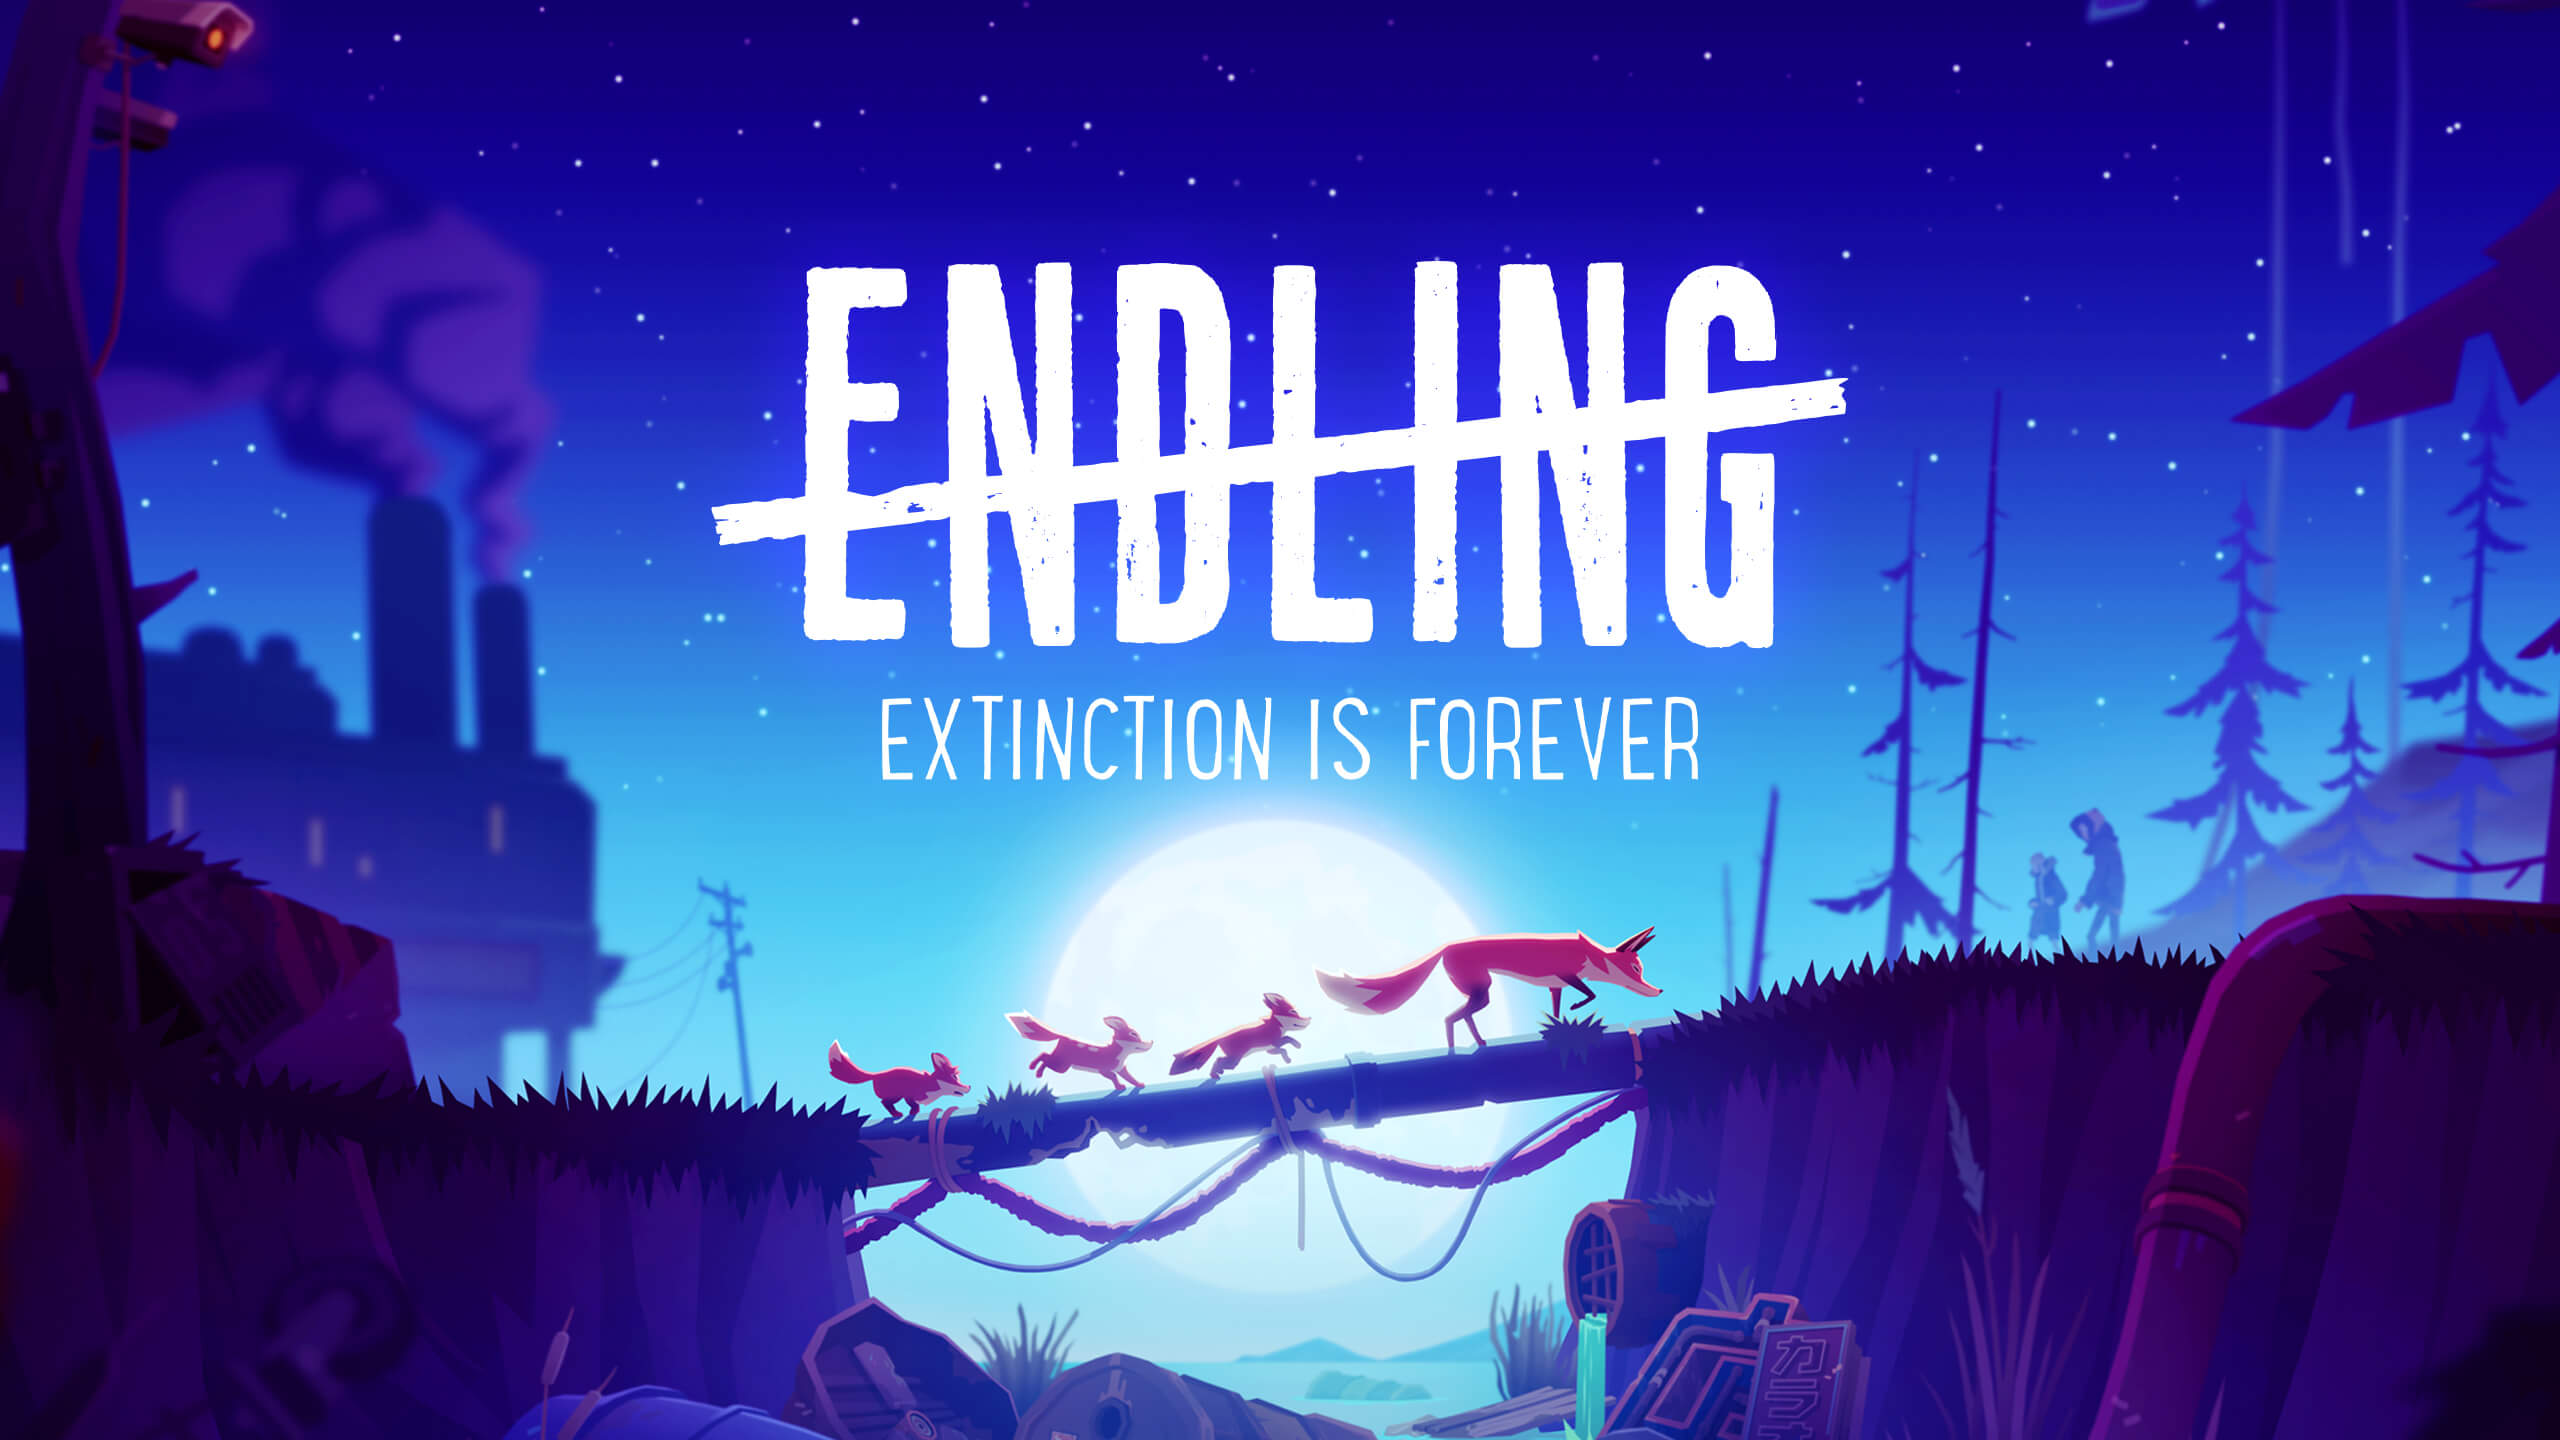 endling extinction download